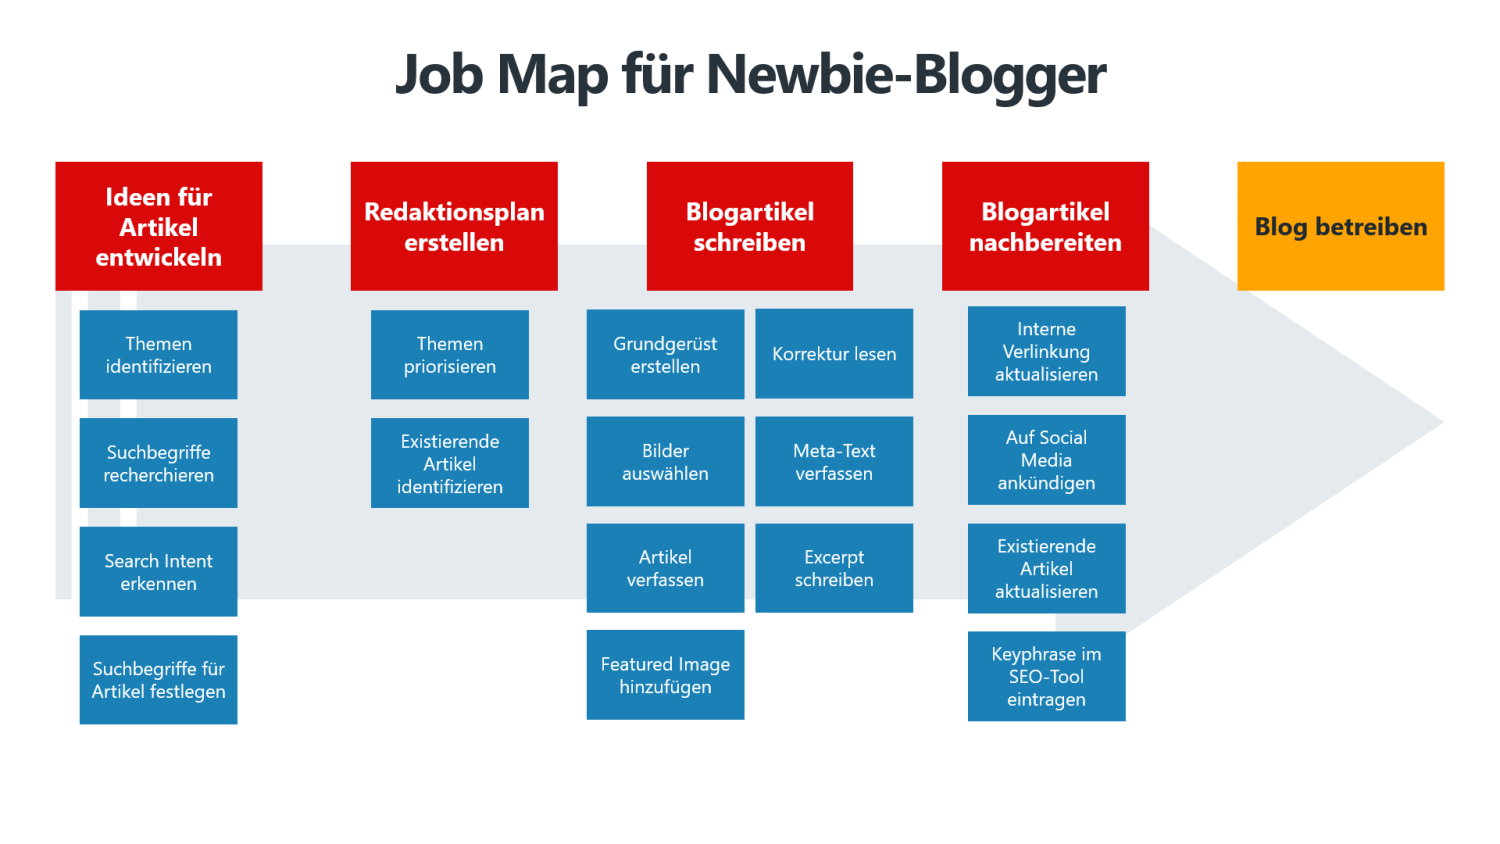 Beispiel Job Map für Newbie-Blogger